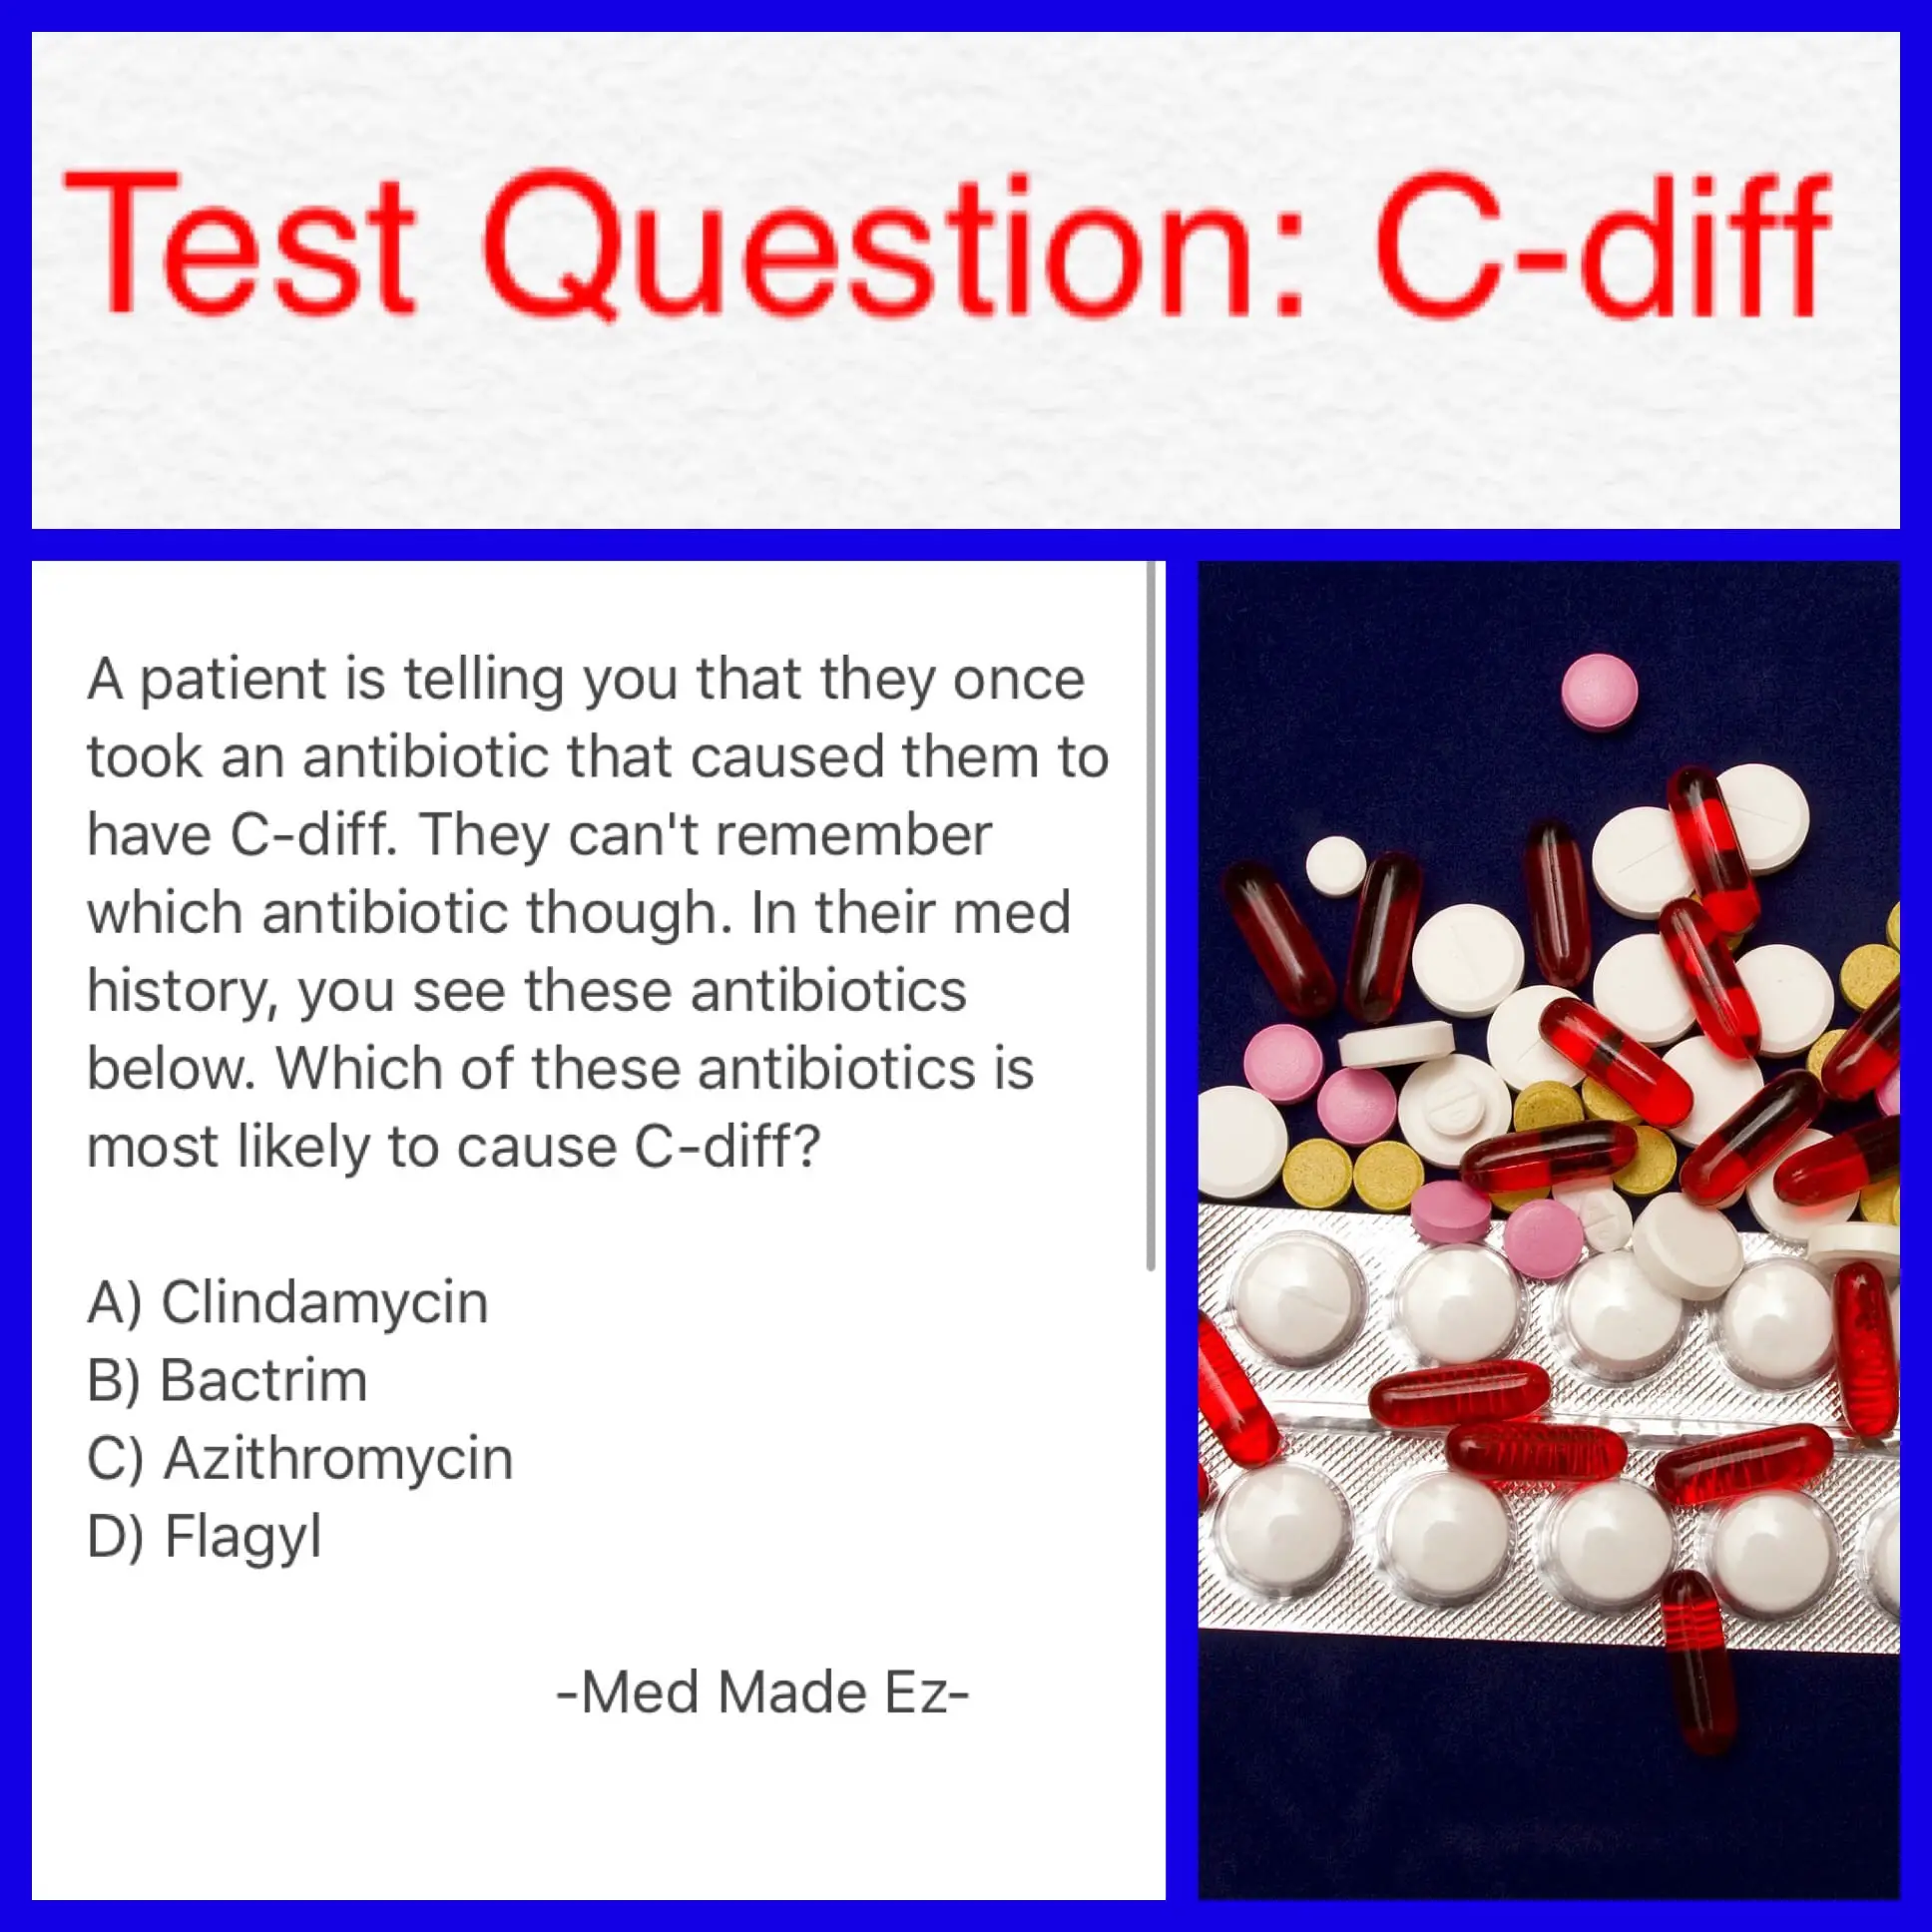 TEST QUESTION: C